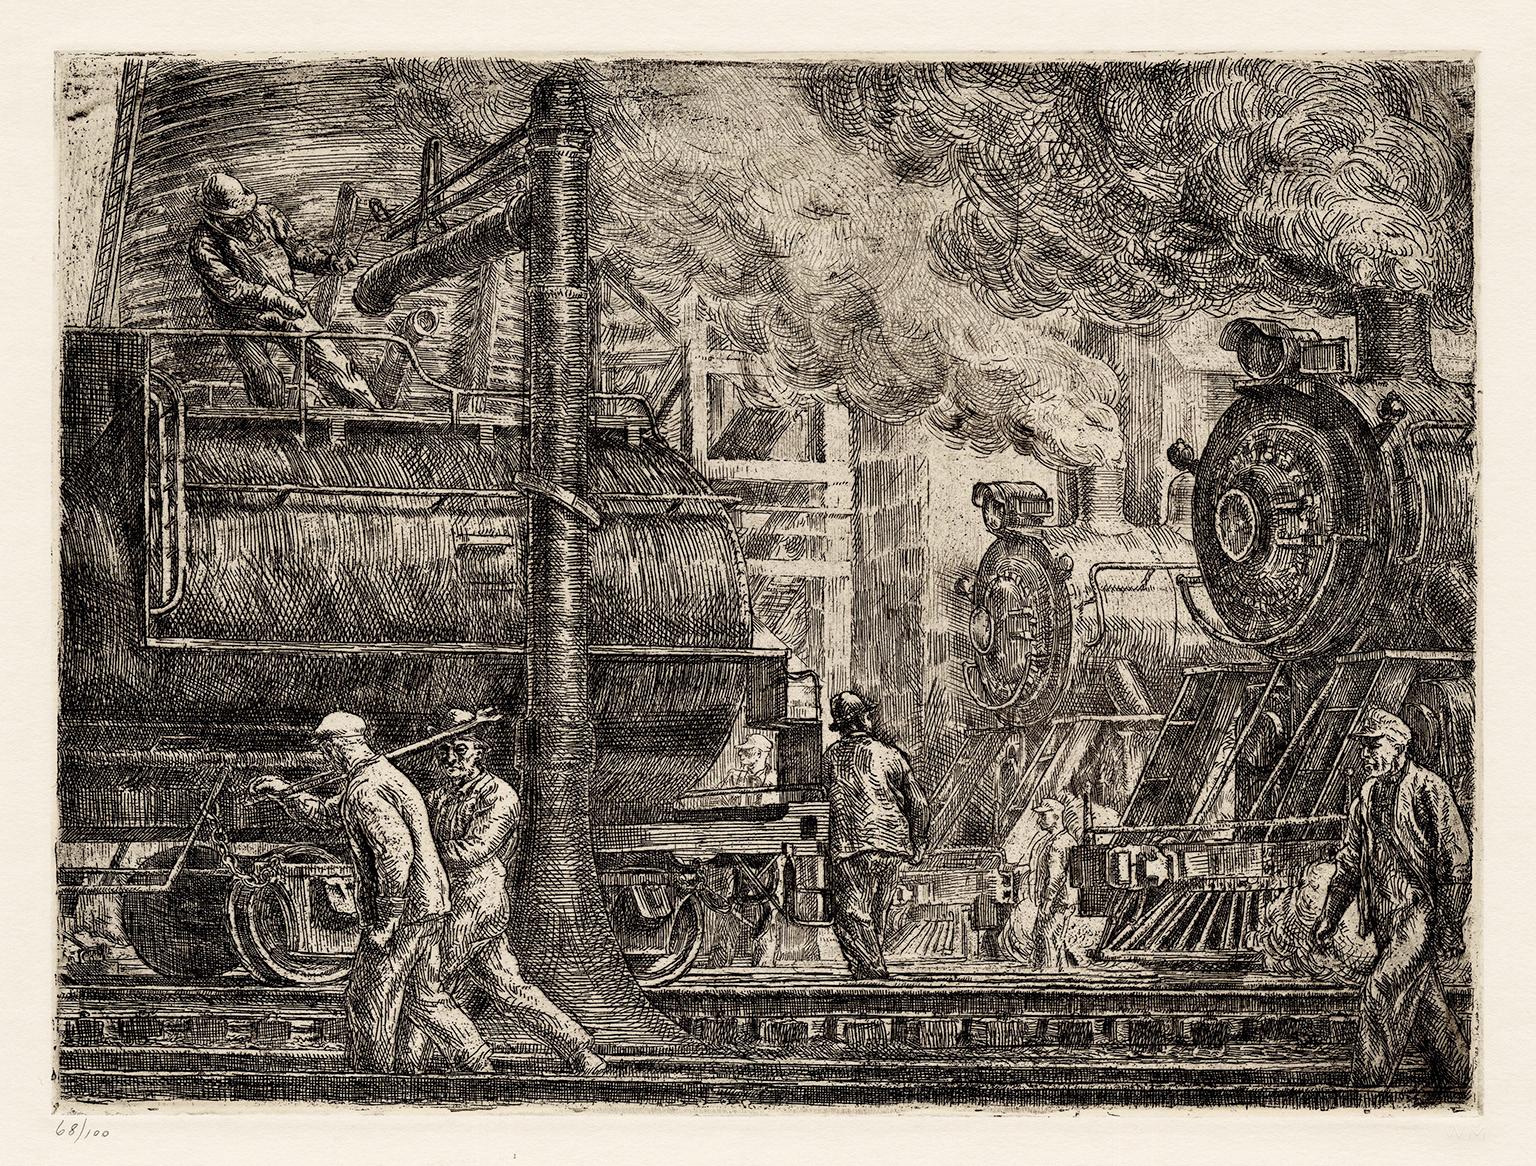 Lokomotiven beim Gießen" - Sozialer Realismus der 1930er Jahre